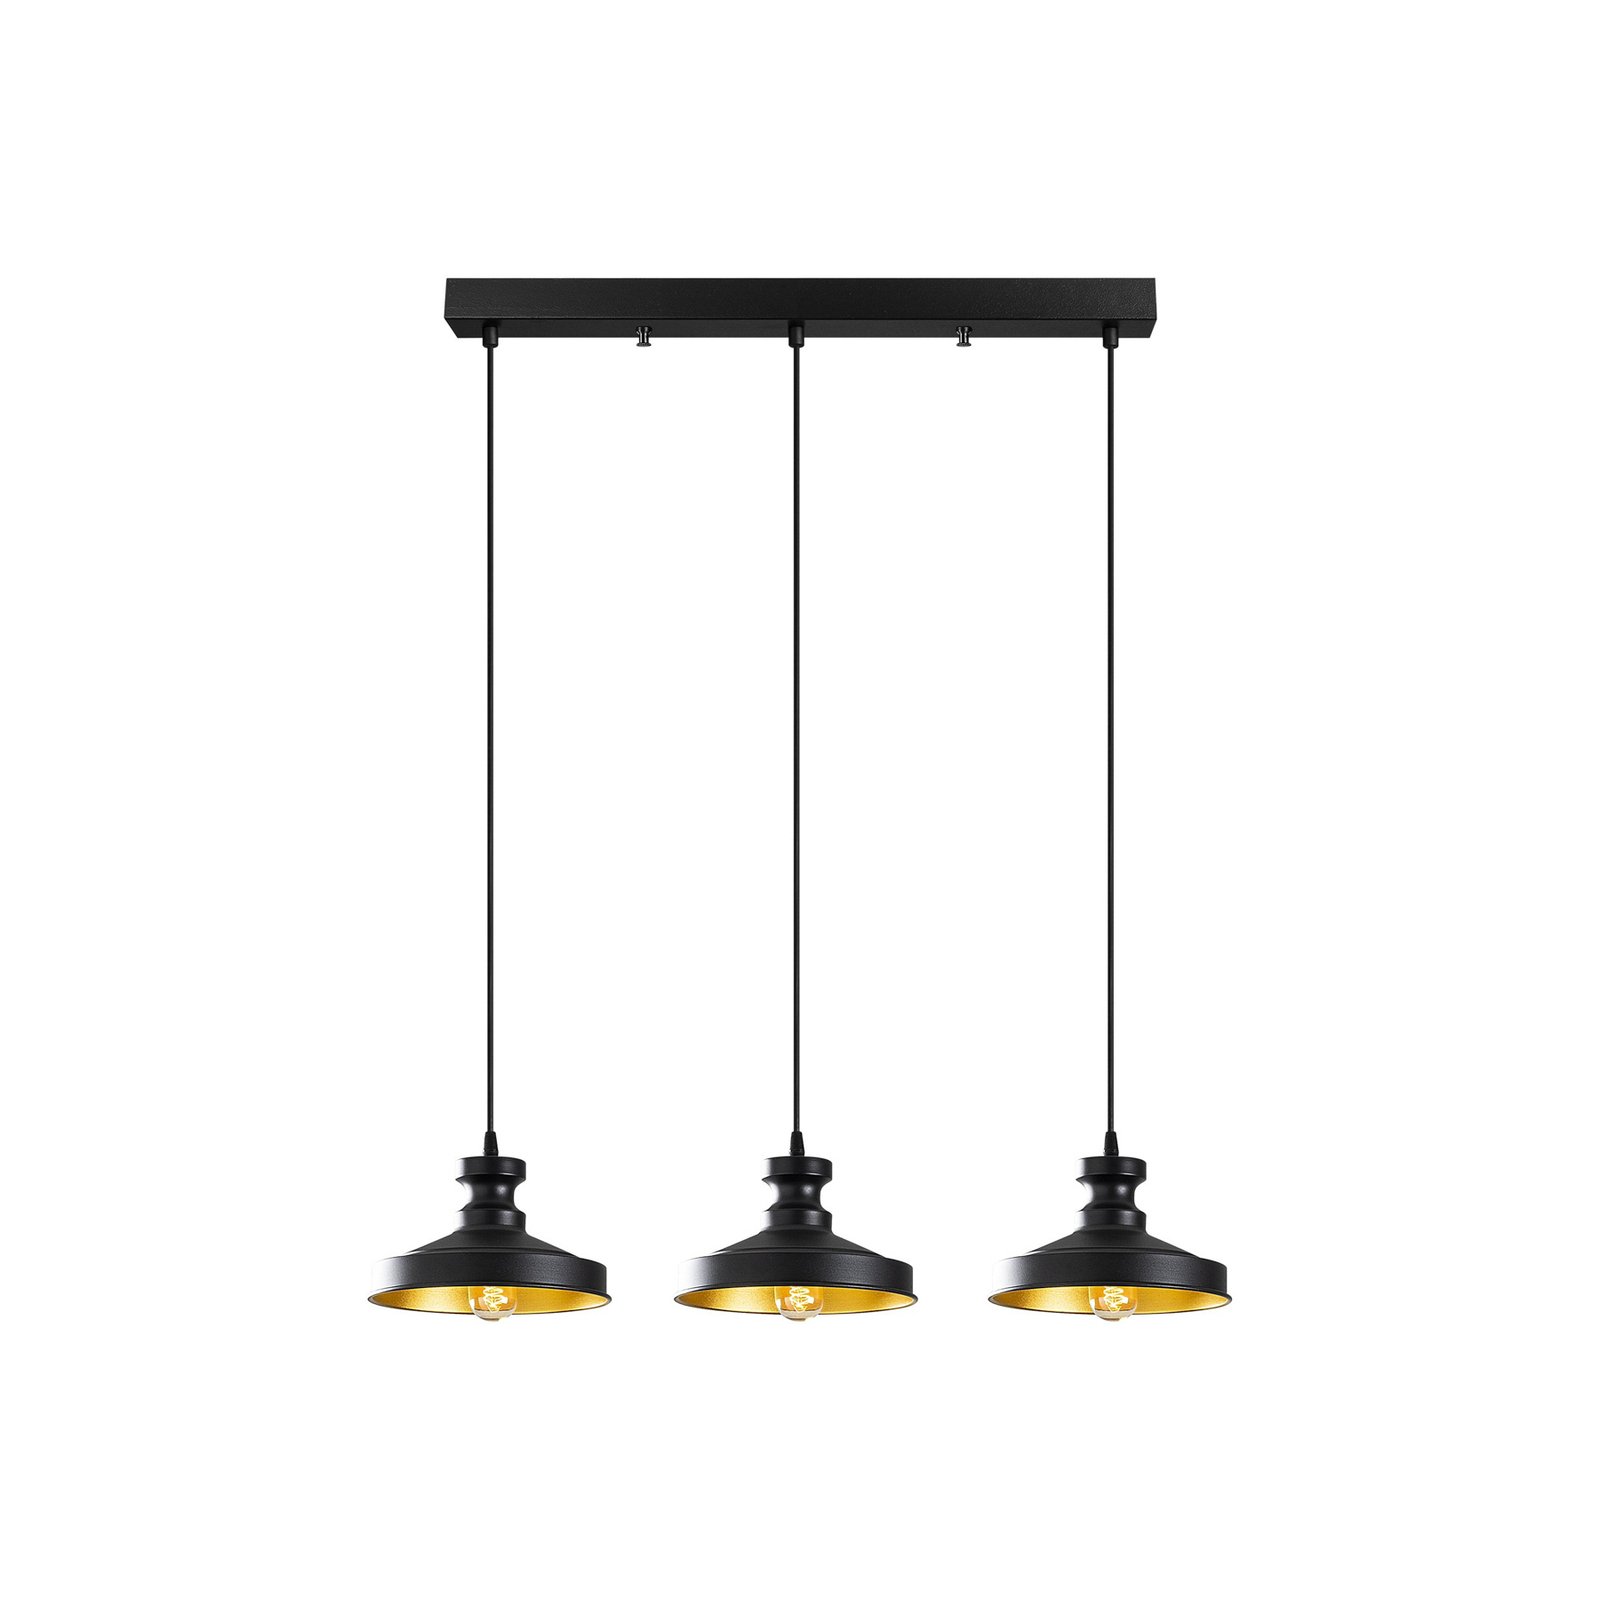 Hanglamp Berceste 182-S1 3-lamps zwart/goud